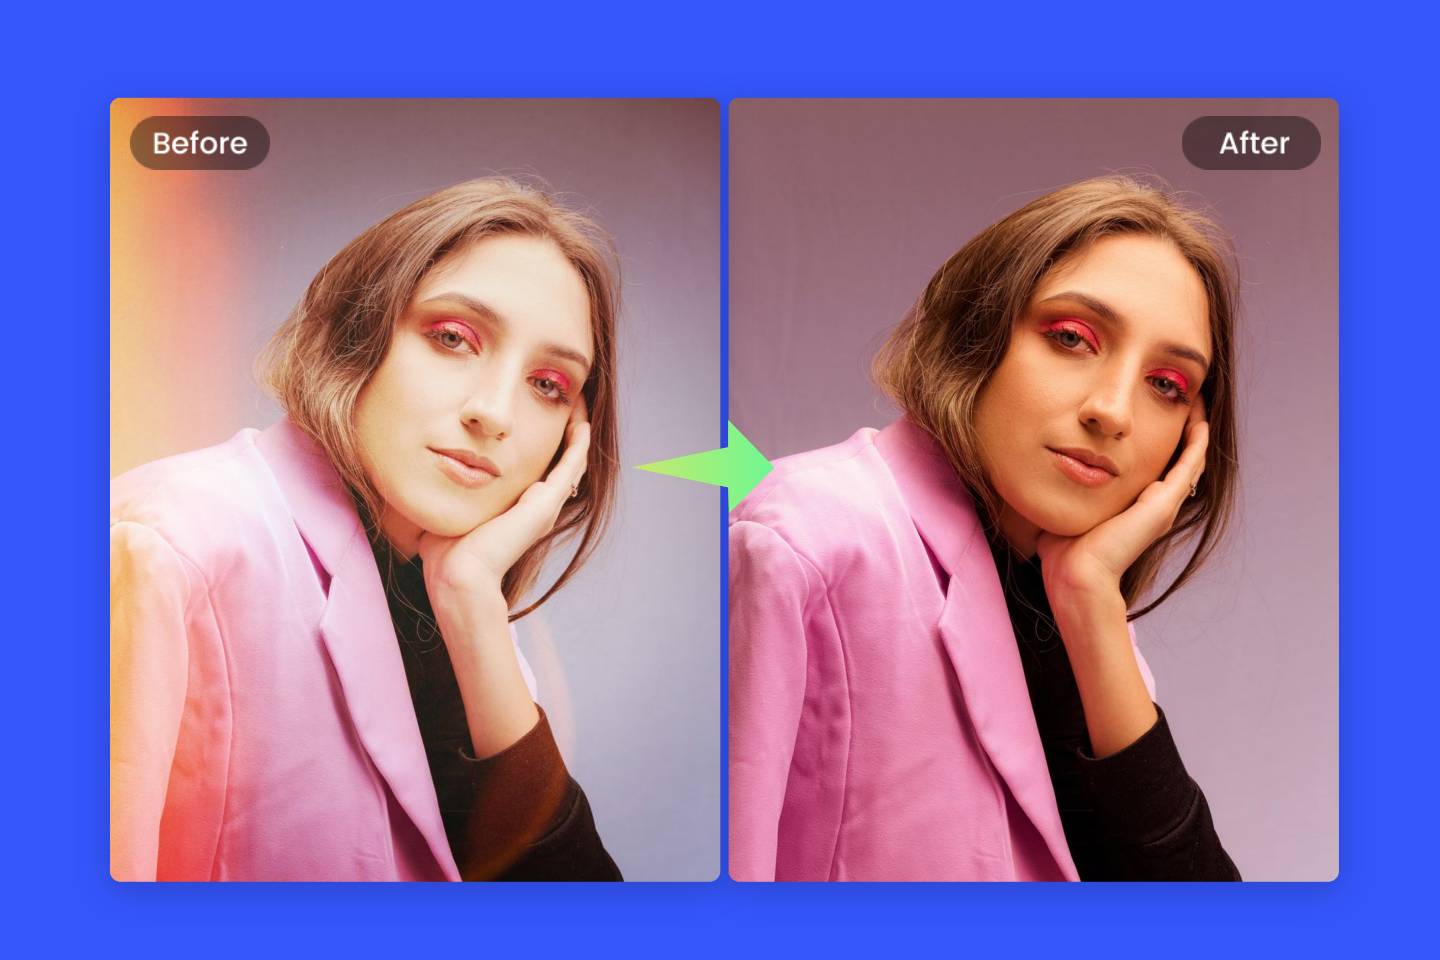 Scoateți filtrul nedorit din imaginea feminină folosind FOTOR Filter Remover